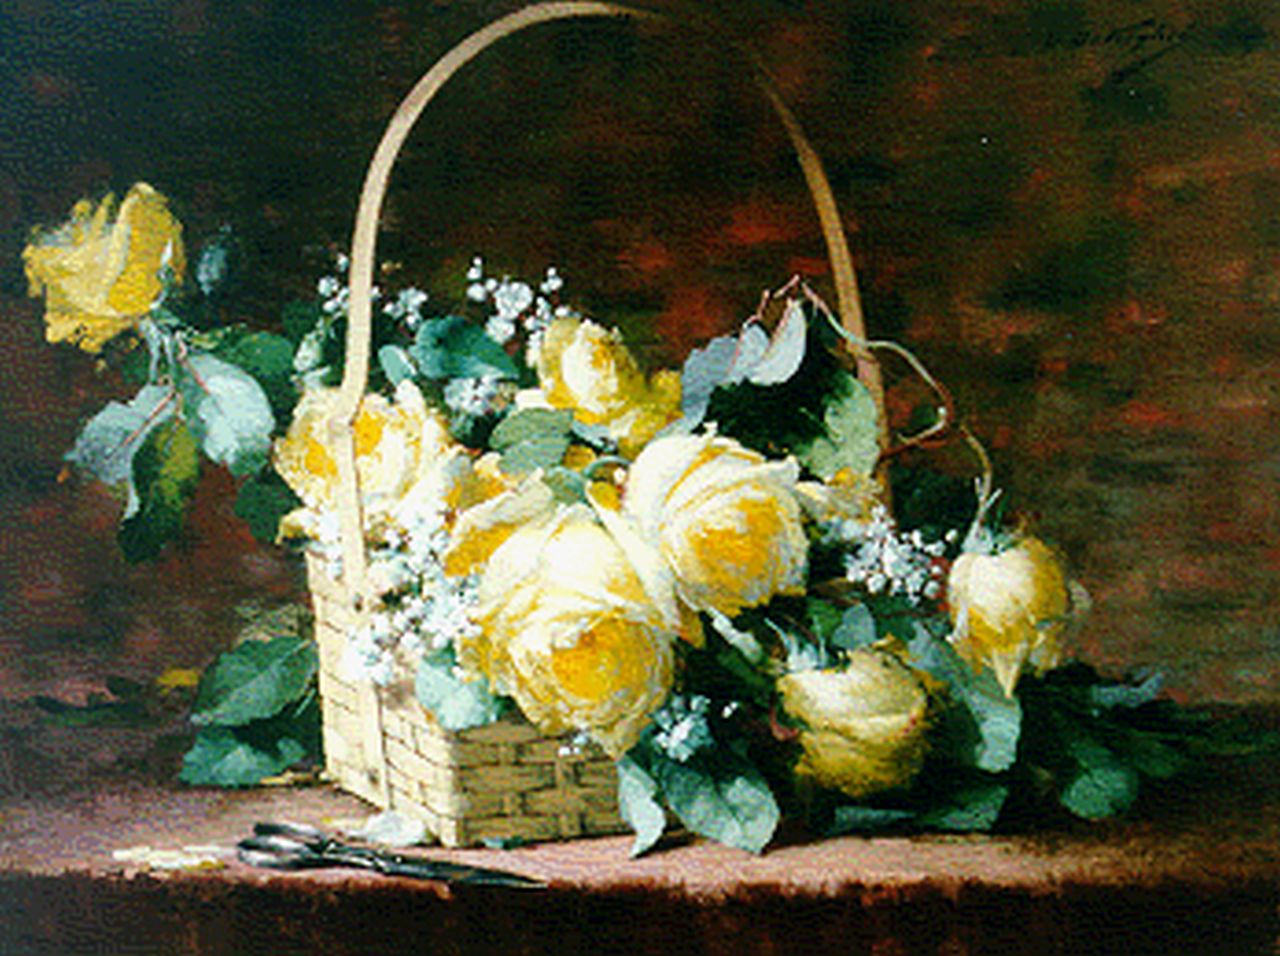 Keghel D. de | Désiré de Keghel, Stilleven met rozen in rieten hengselmand, olieverf op doek 45,4 x 60,2 cm, gesigneerd rechtsboven